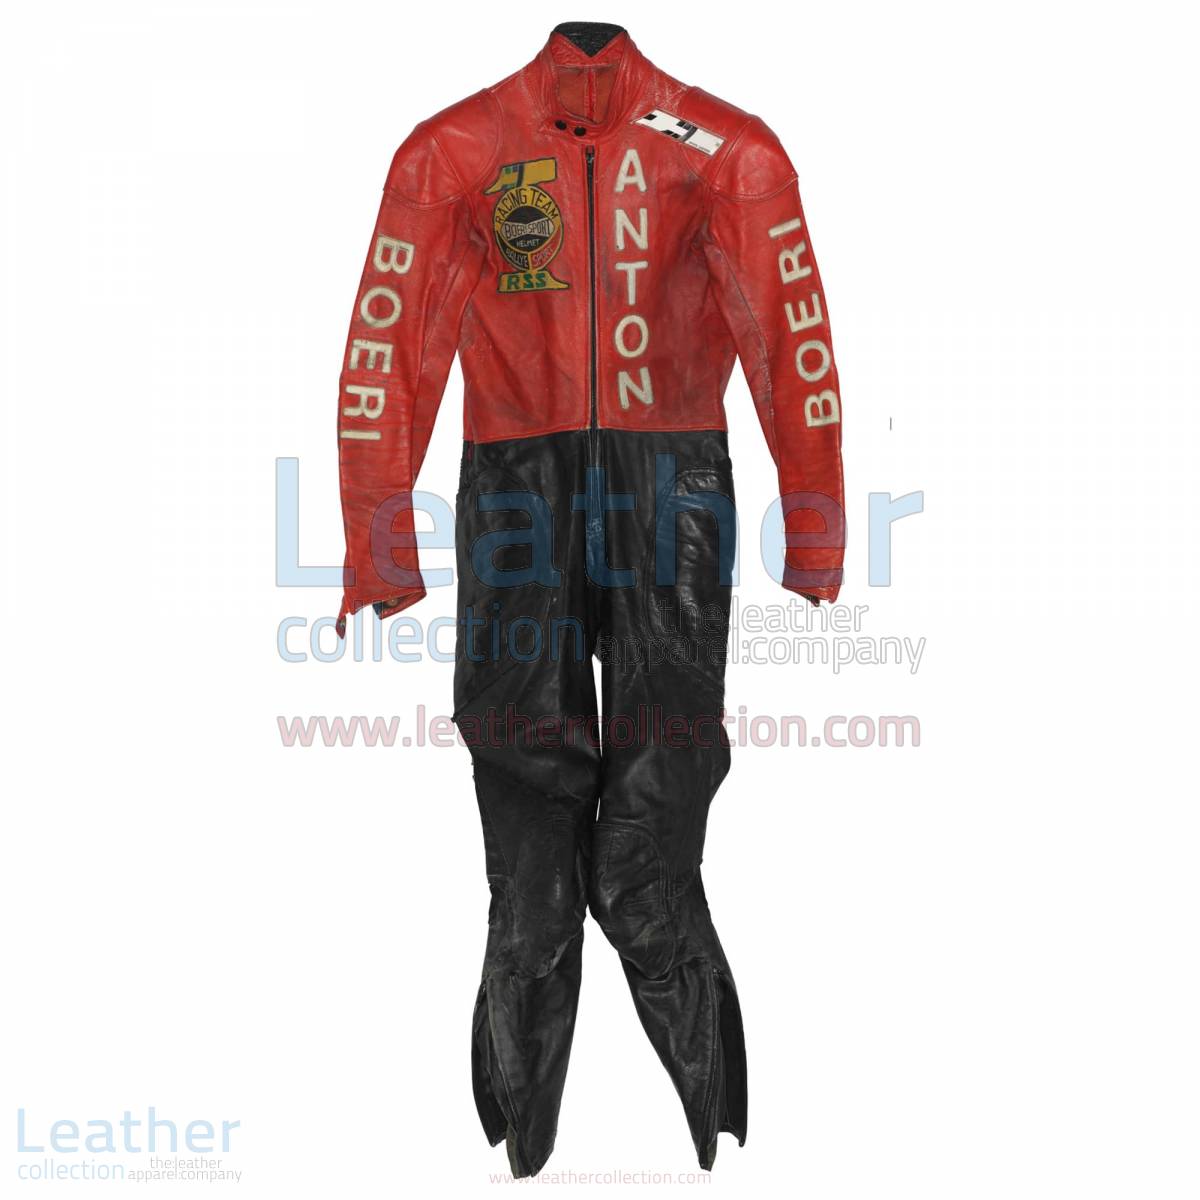 Toni Mang Kawasaki GP 1980 Racing Suit – Kawasaki Suit